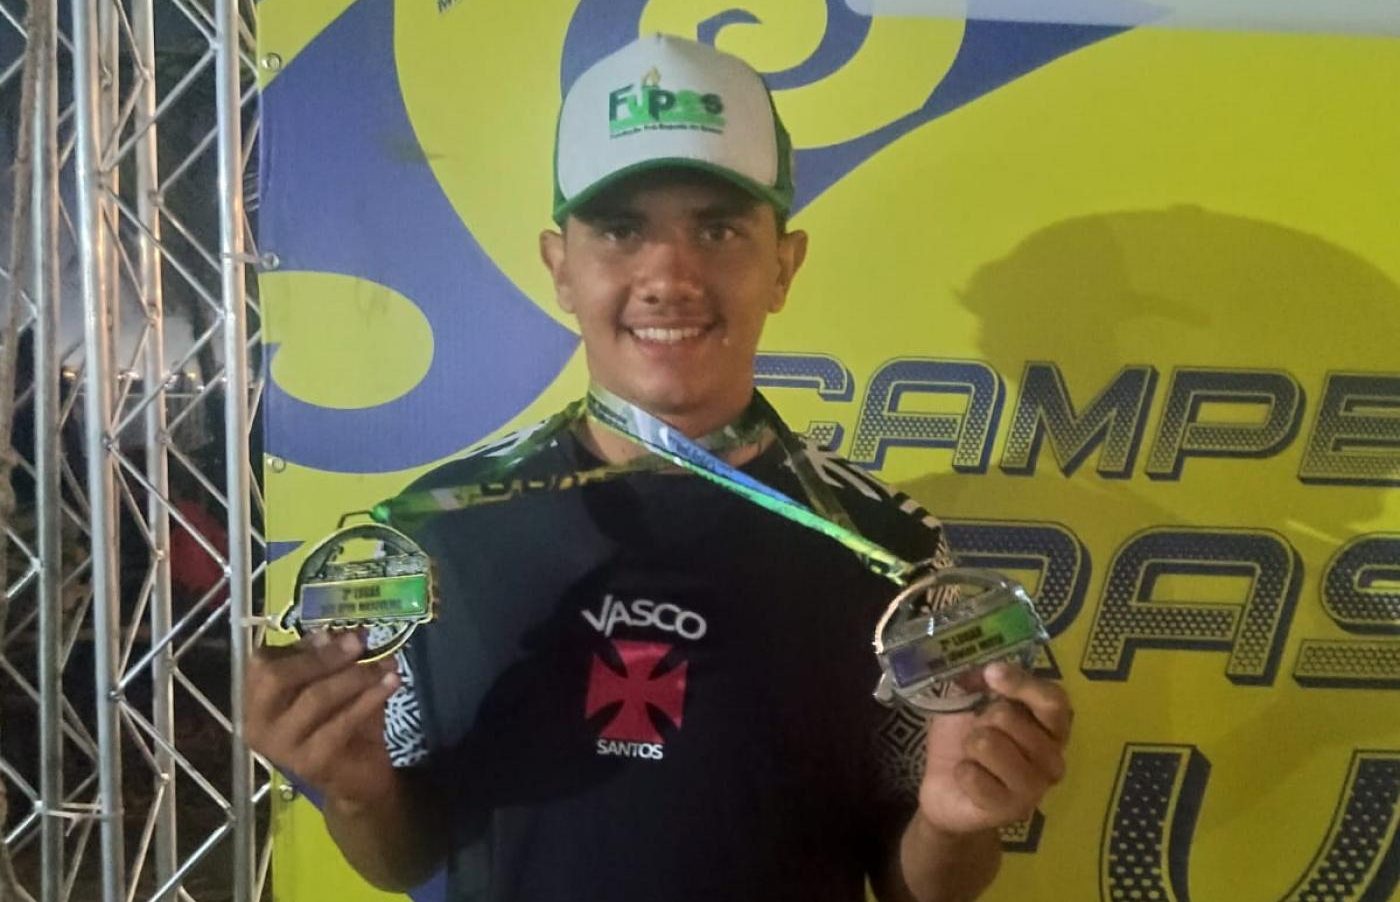 Jovem santista conquista duas medalhas no Brasileiro de Canoa Havaiana | Jornal da Orla